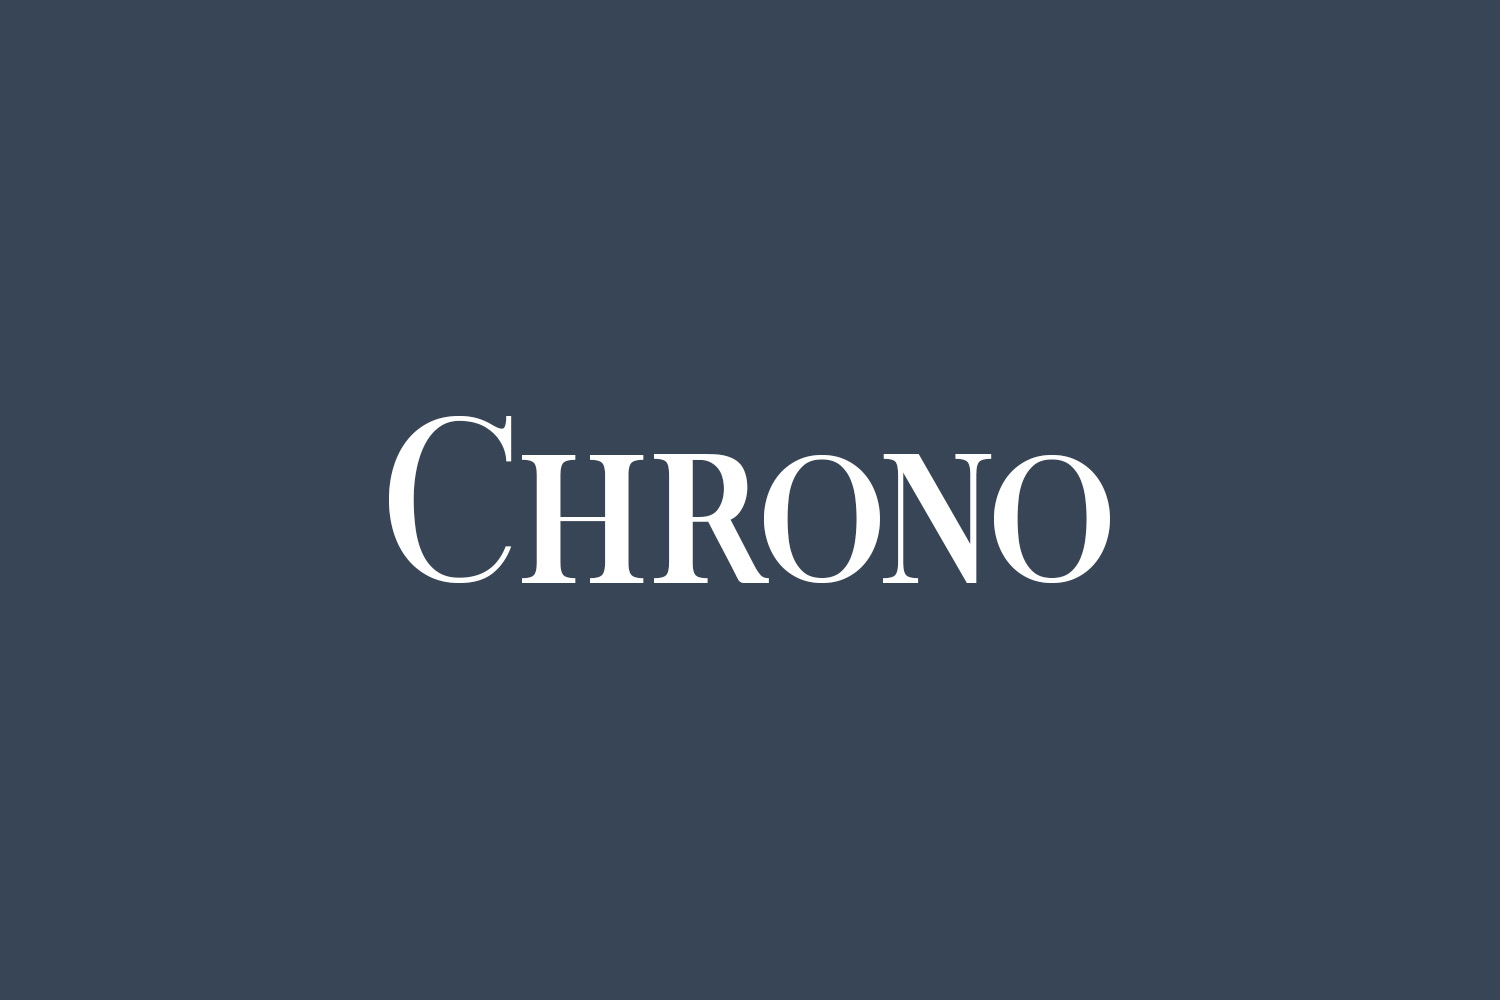 Chrono Free Font